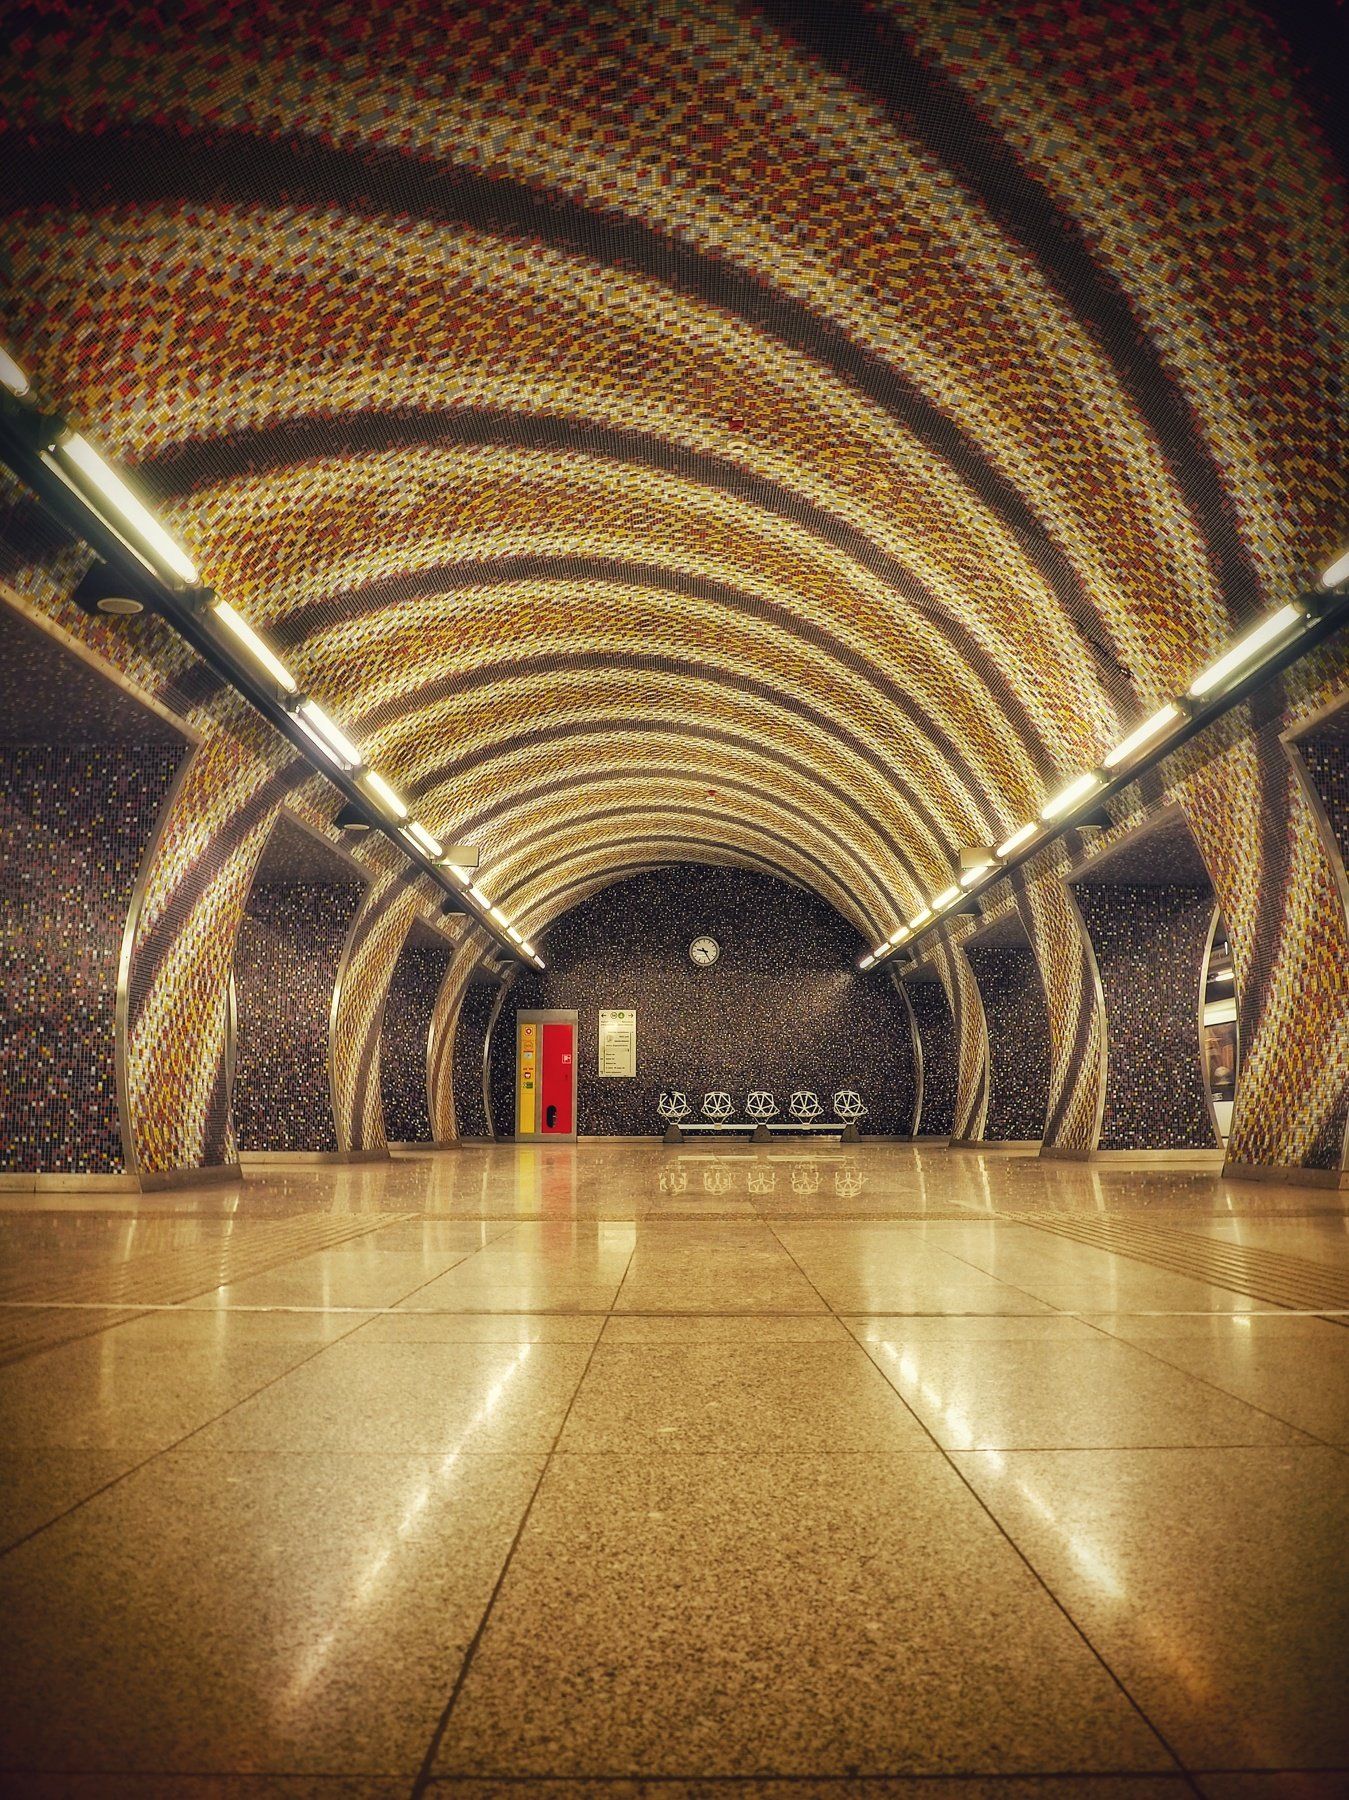 architecture, budapest, hungary, underground, metro station, urban, city, photography, citylife, Adrian Eperjessy